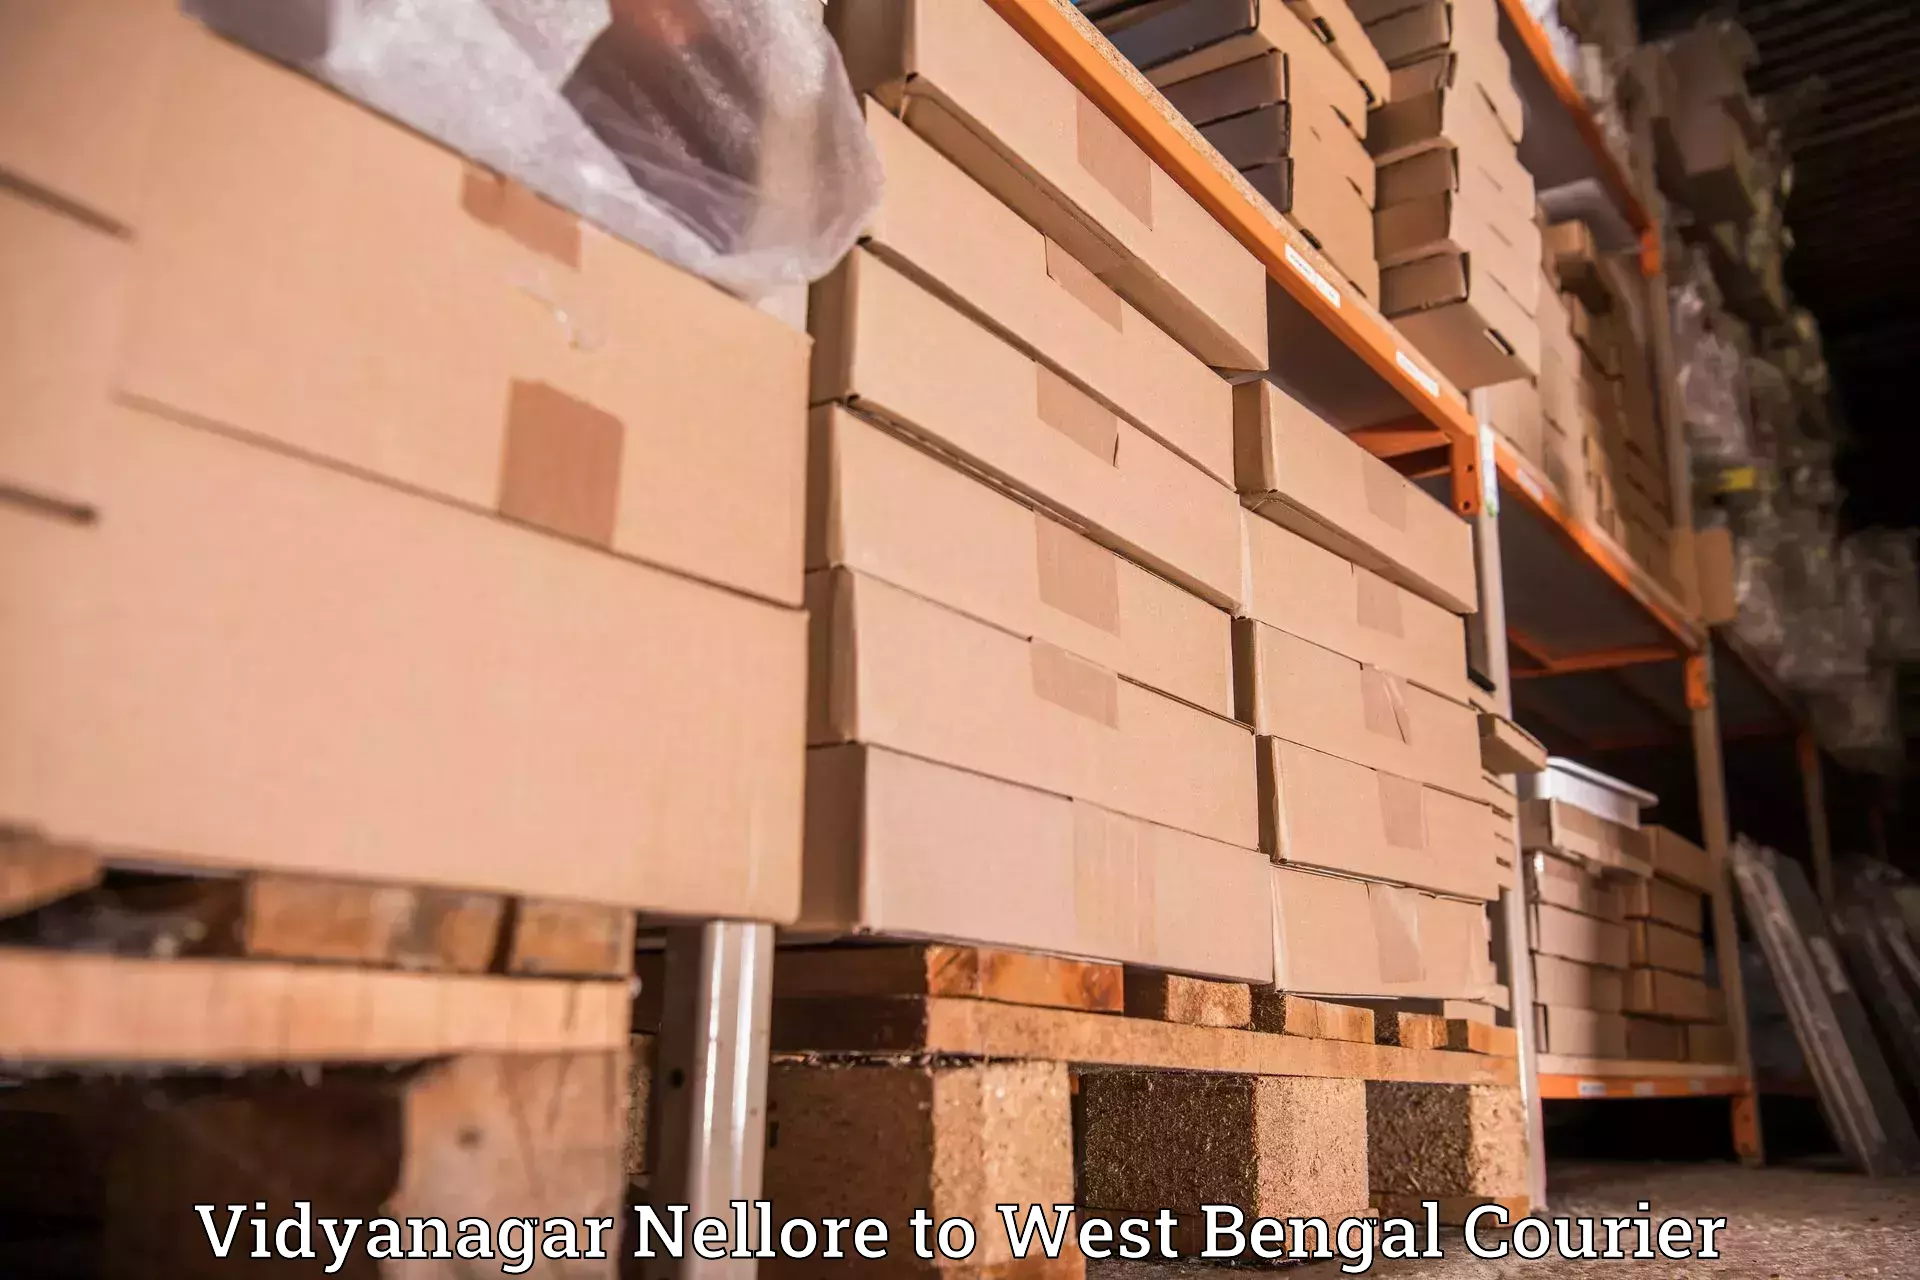 Efficient freight service Vidyanagar Nellore to Dakshin Barasat